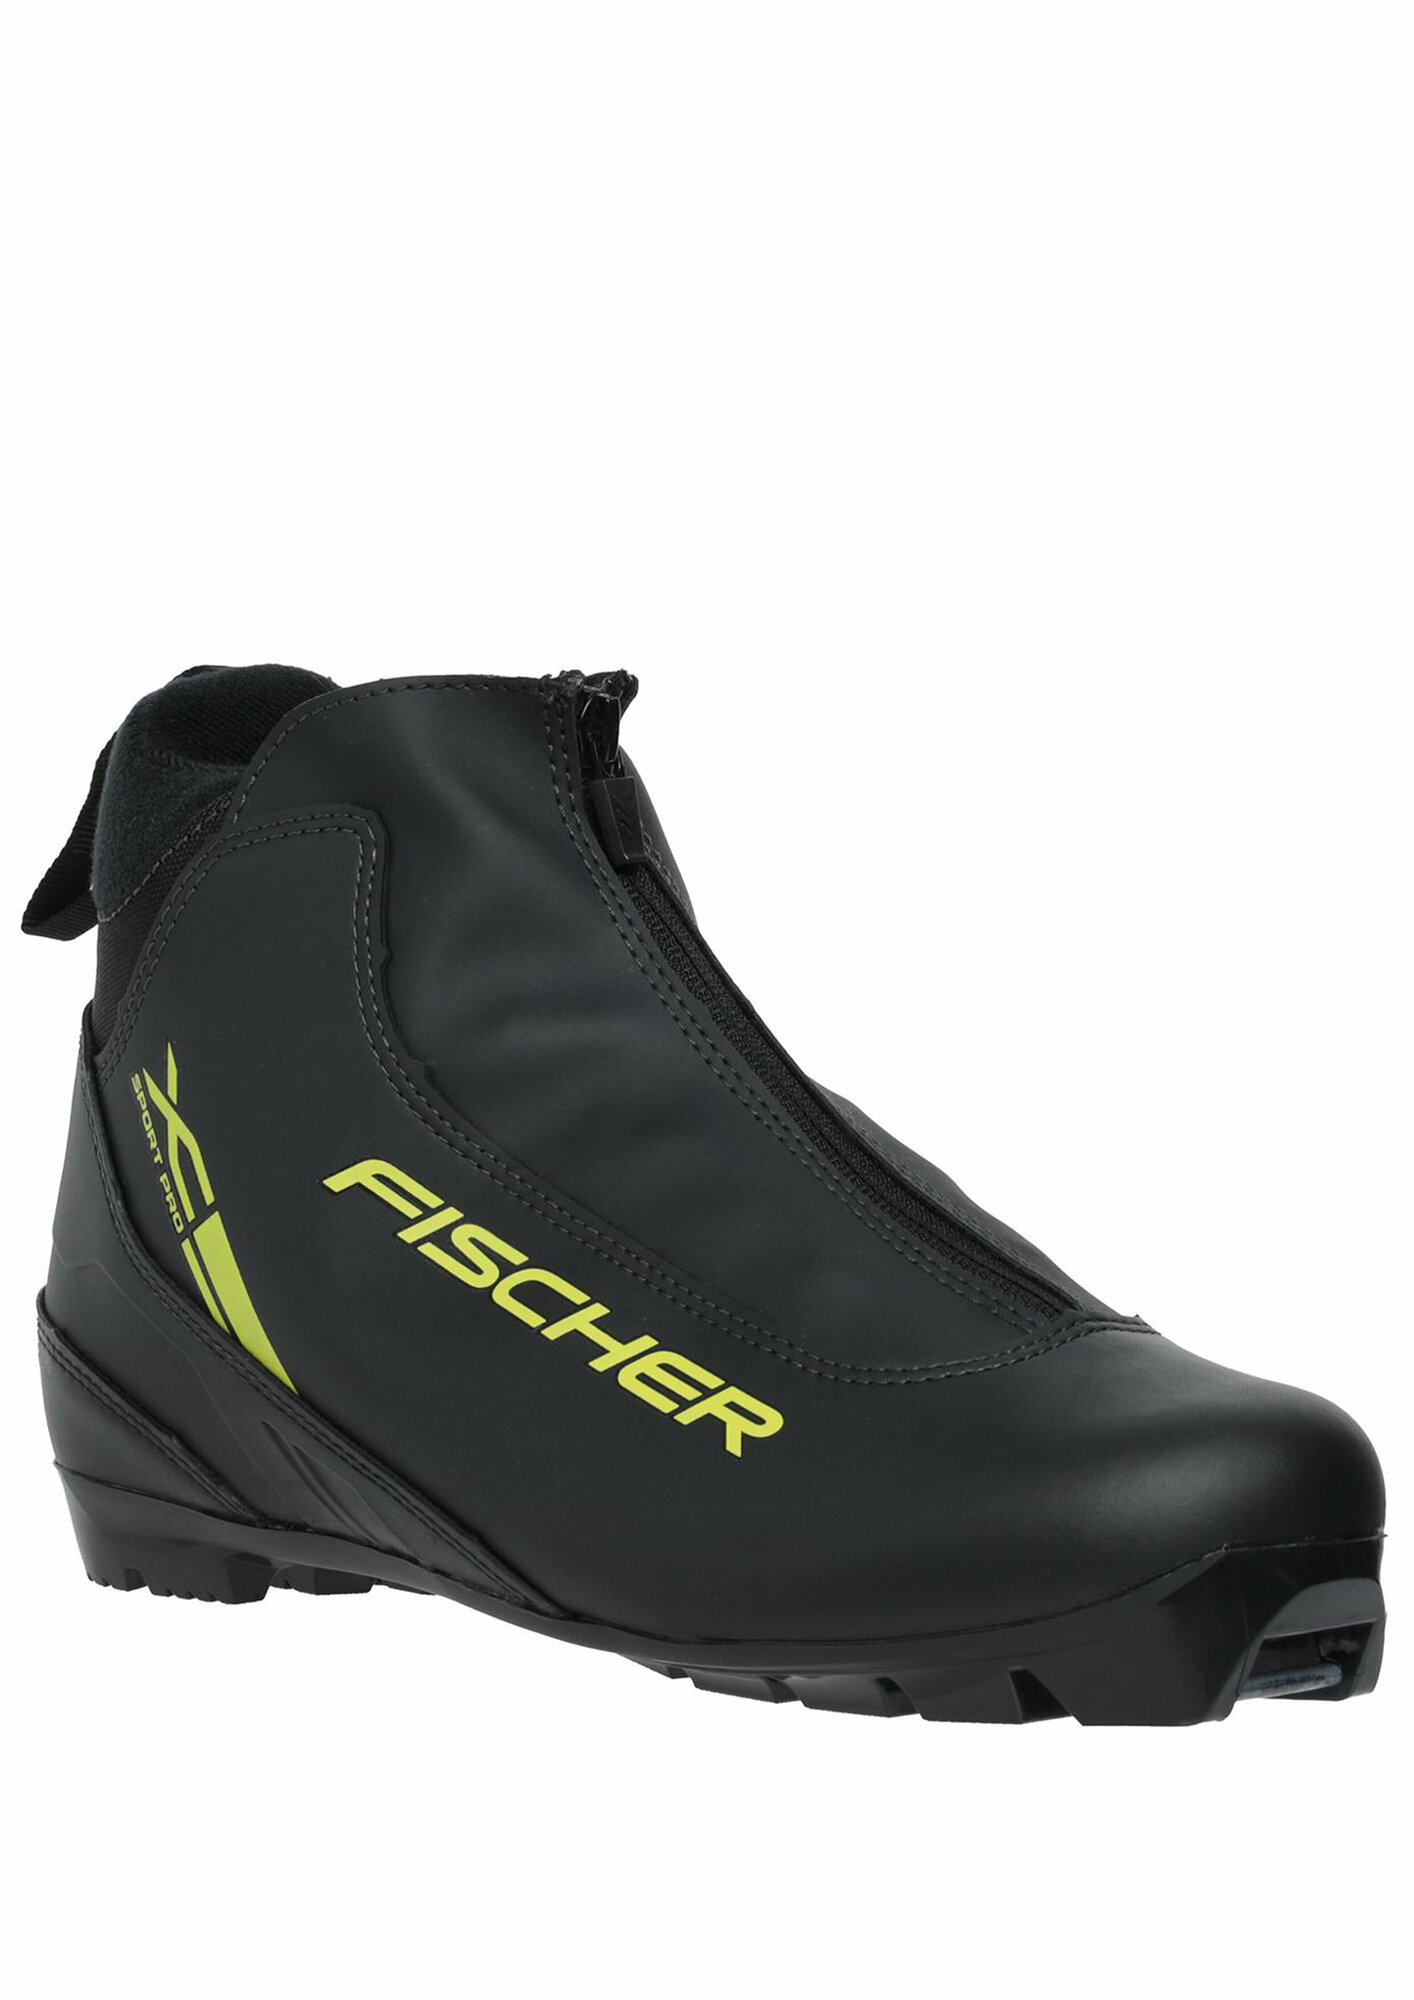 Лыжные ботинки NNN Fischer XC SPORT PRO размер 46